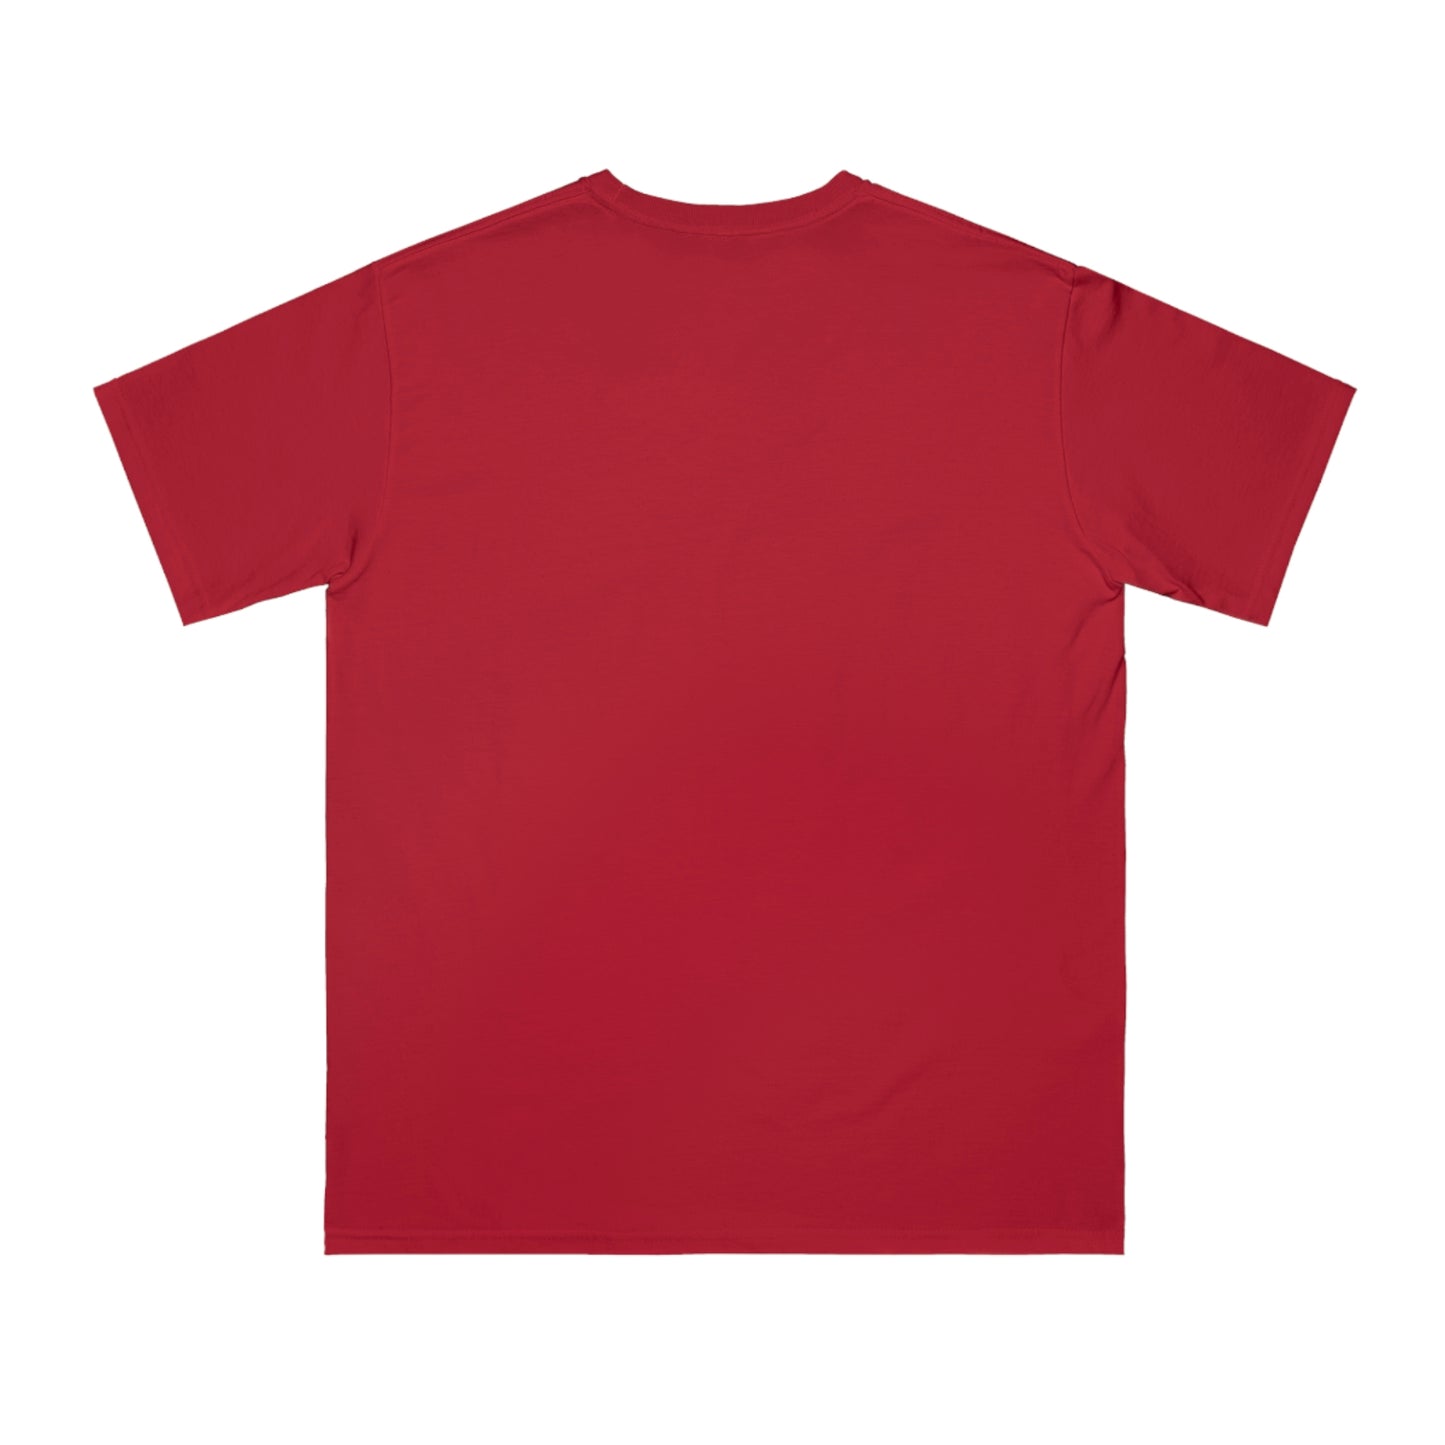 Organic Unisex Classic T-Shirt - ZERO WASTE